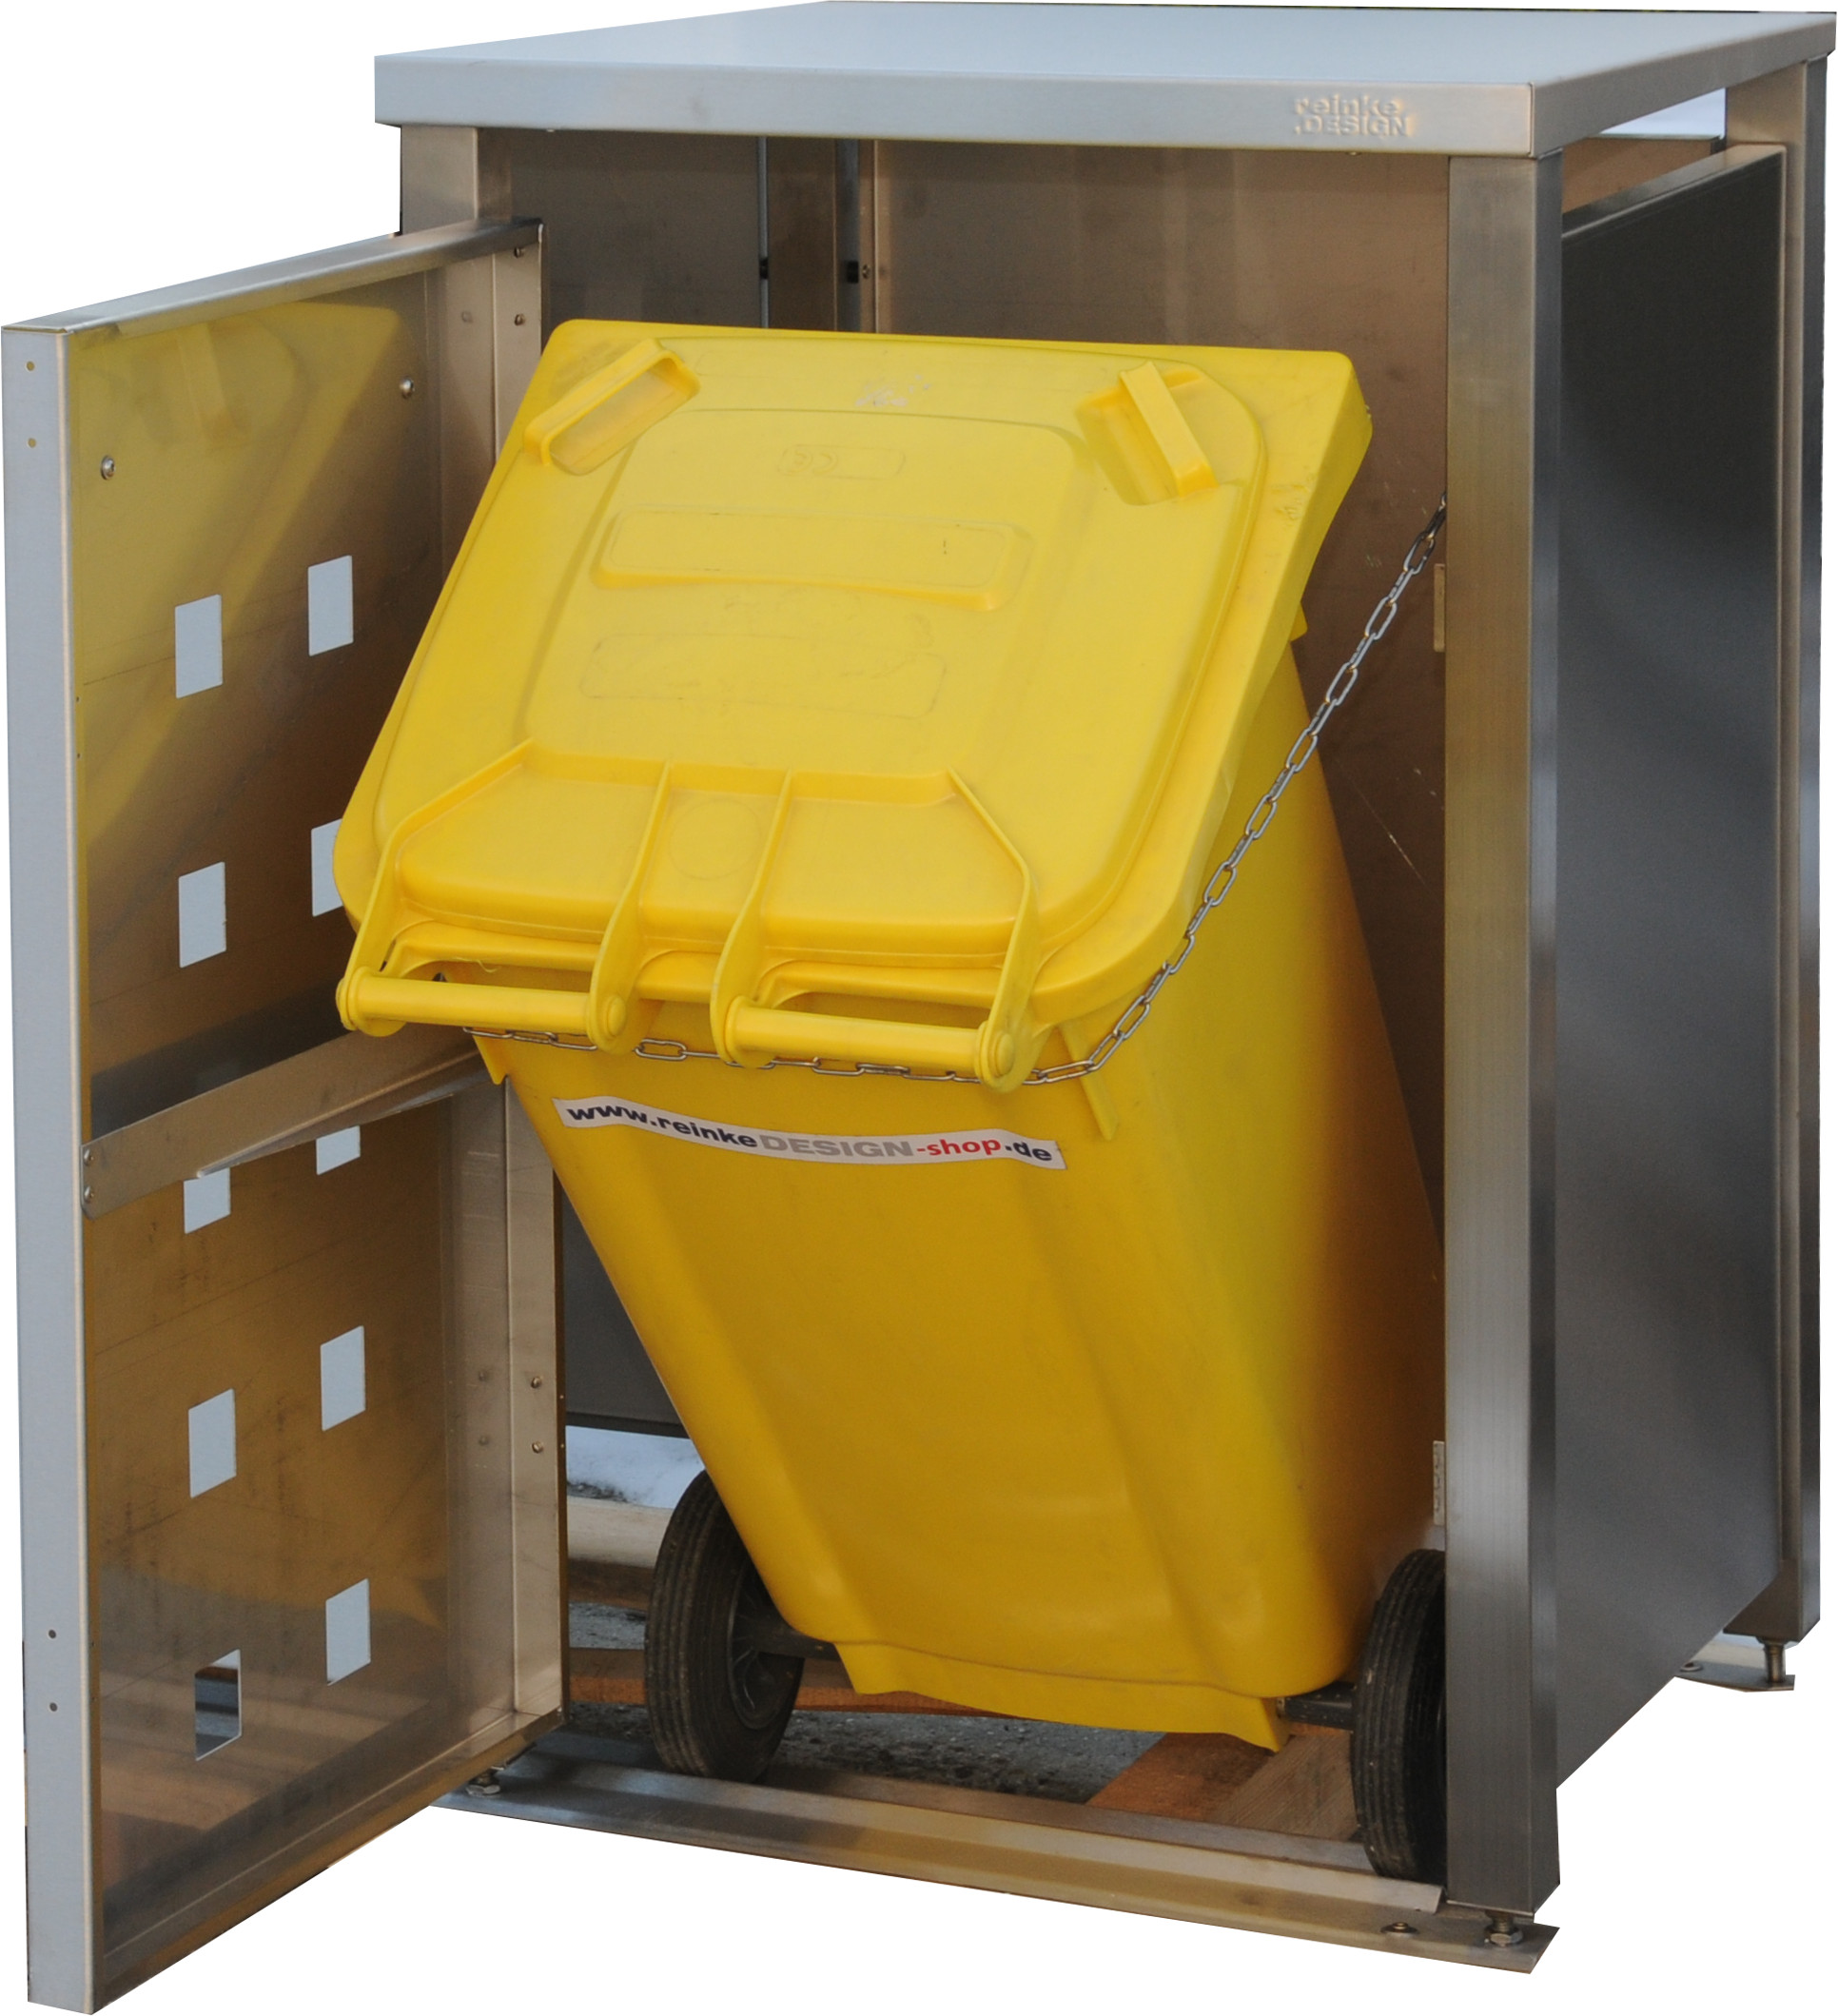 Müllbox Typ-MD, 2x 240l + 1x 120l, Türfarbe Edelstahl